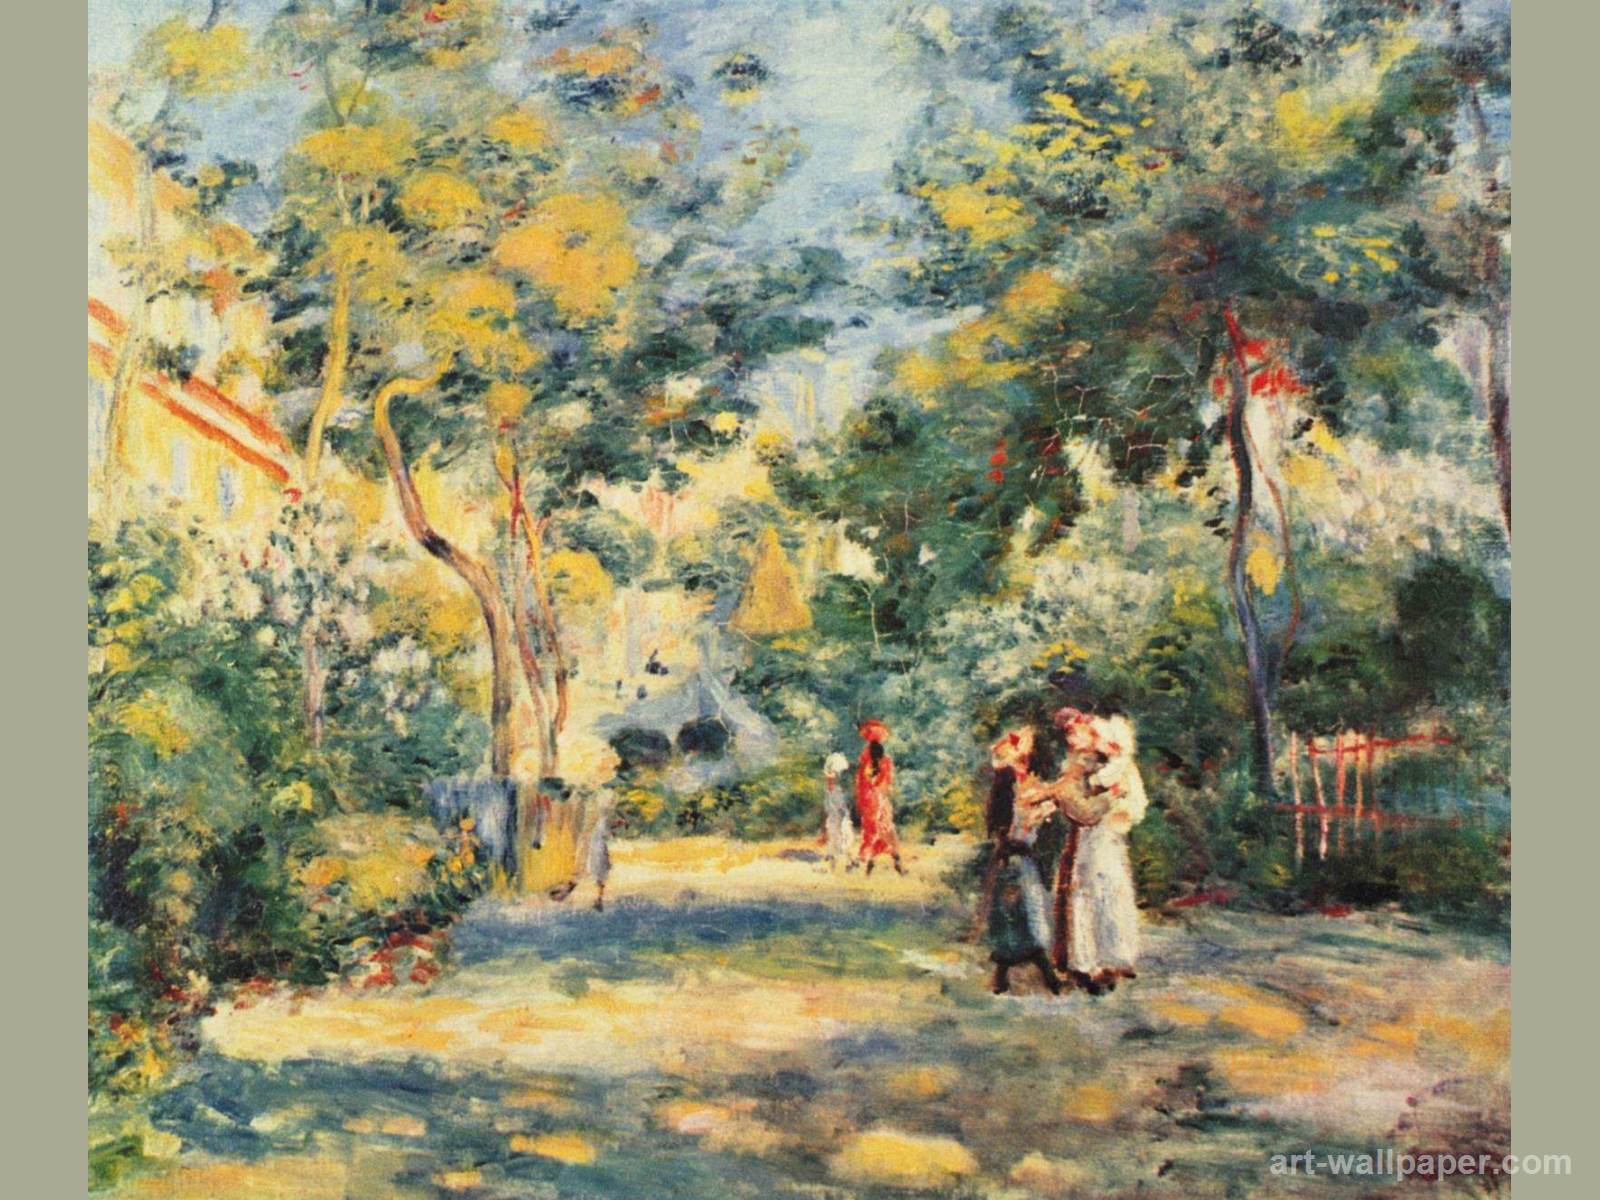 Renoir Wallpaper - Pierre Auguste Renoir The Garden In Montmartre , HD Wallpaper & Backgrounds